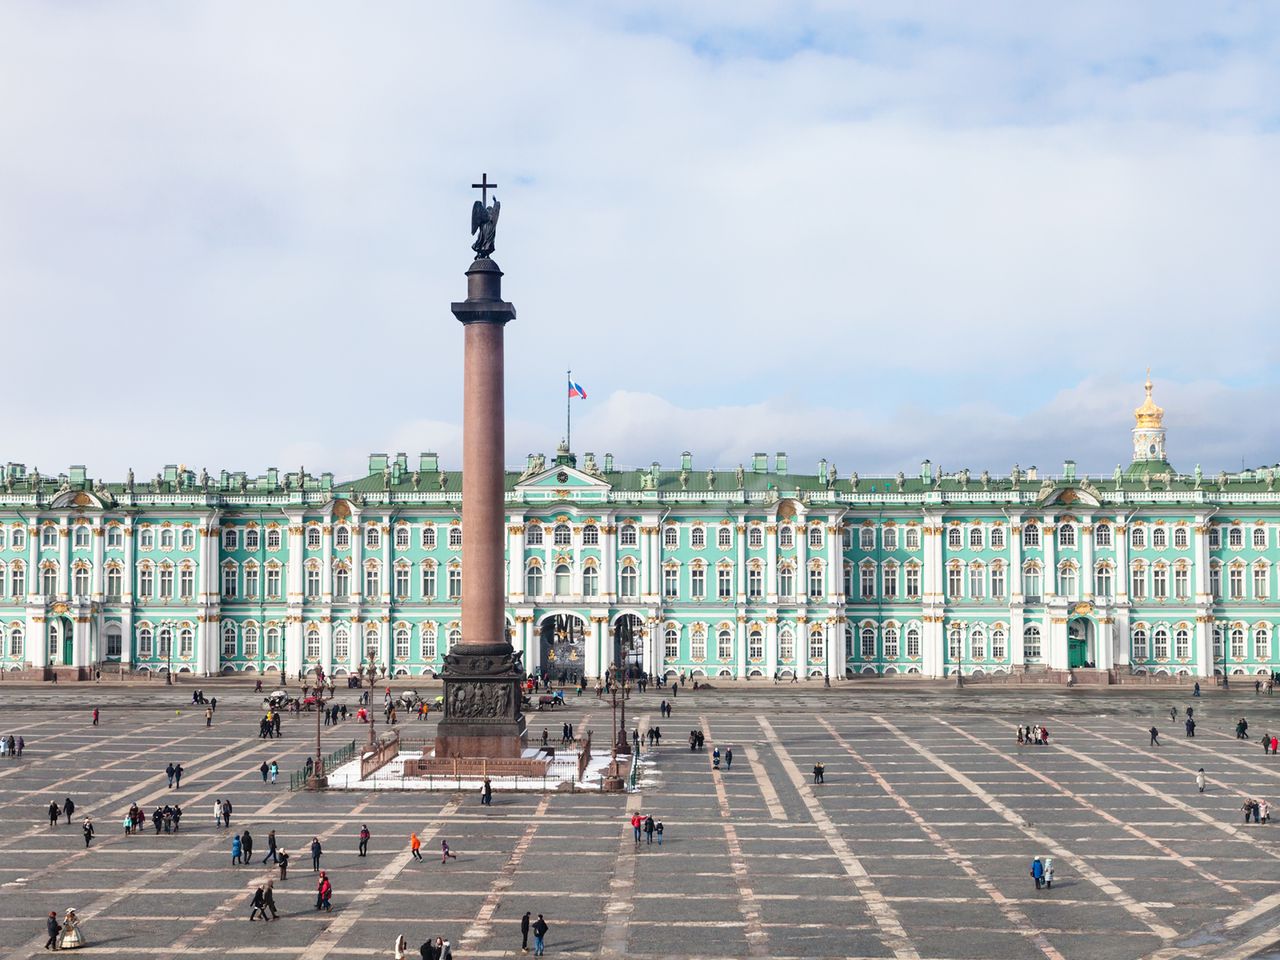 Обзорная по Питеру с Петропавловской крепостью | Цена 863₽, отзывы, описание экскурсии